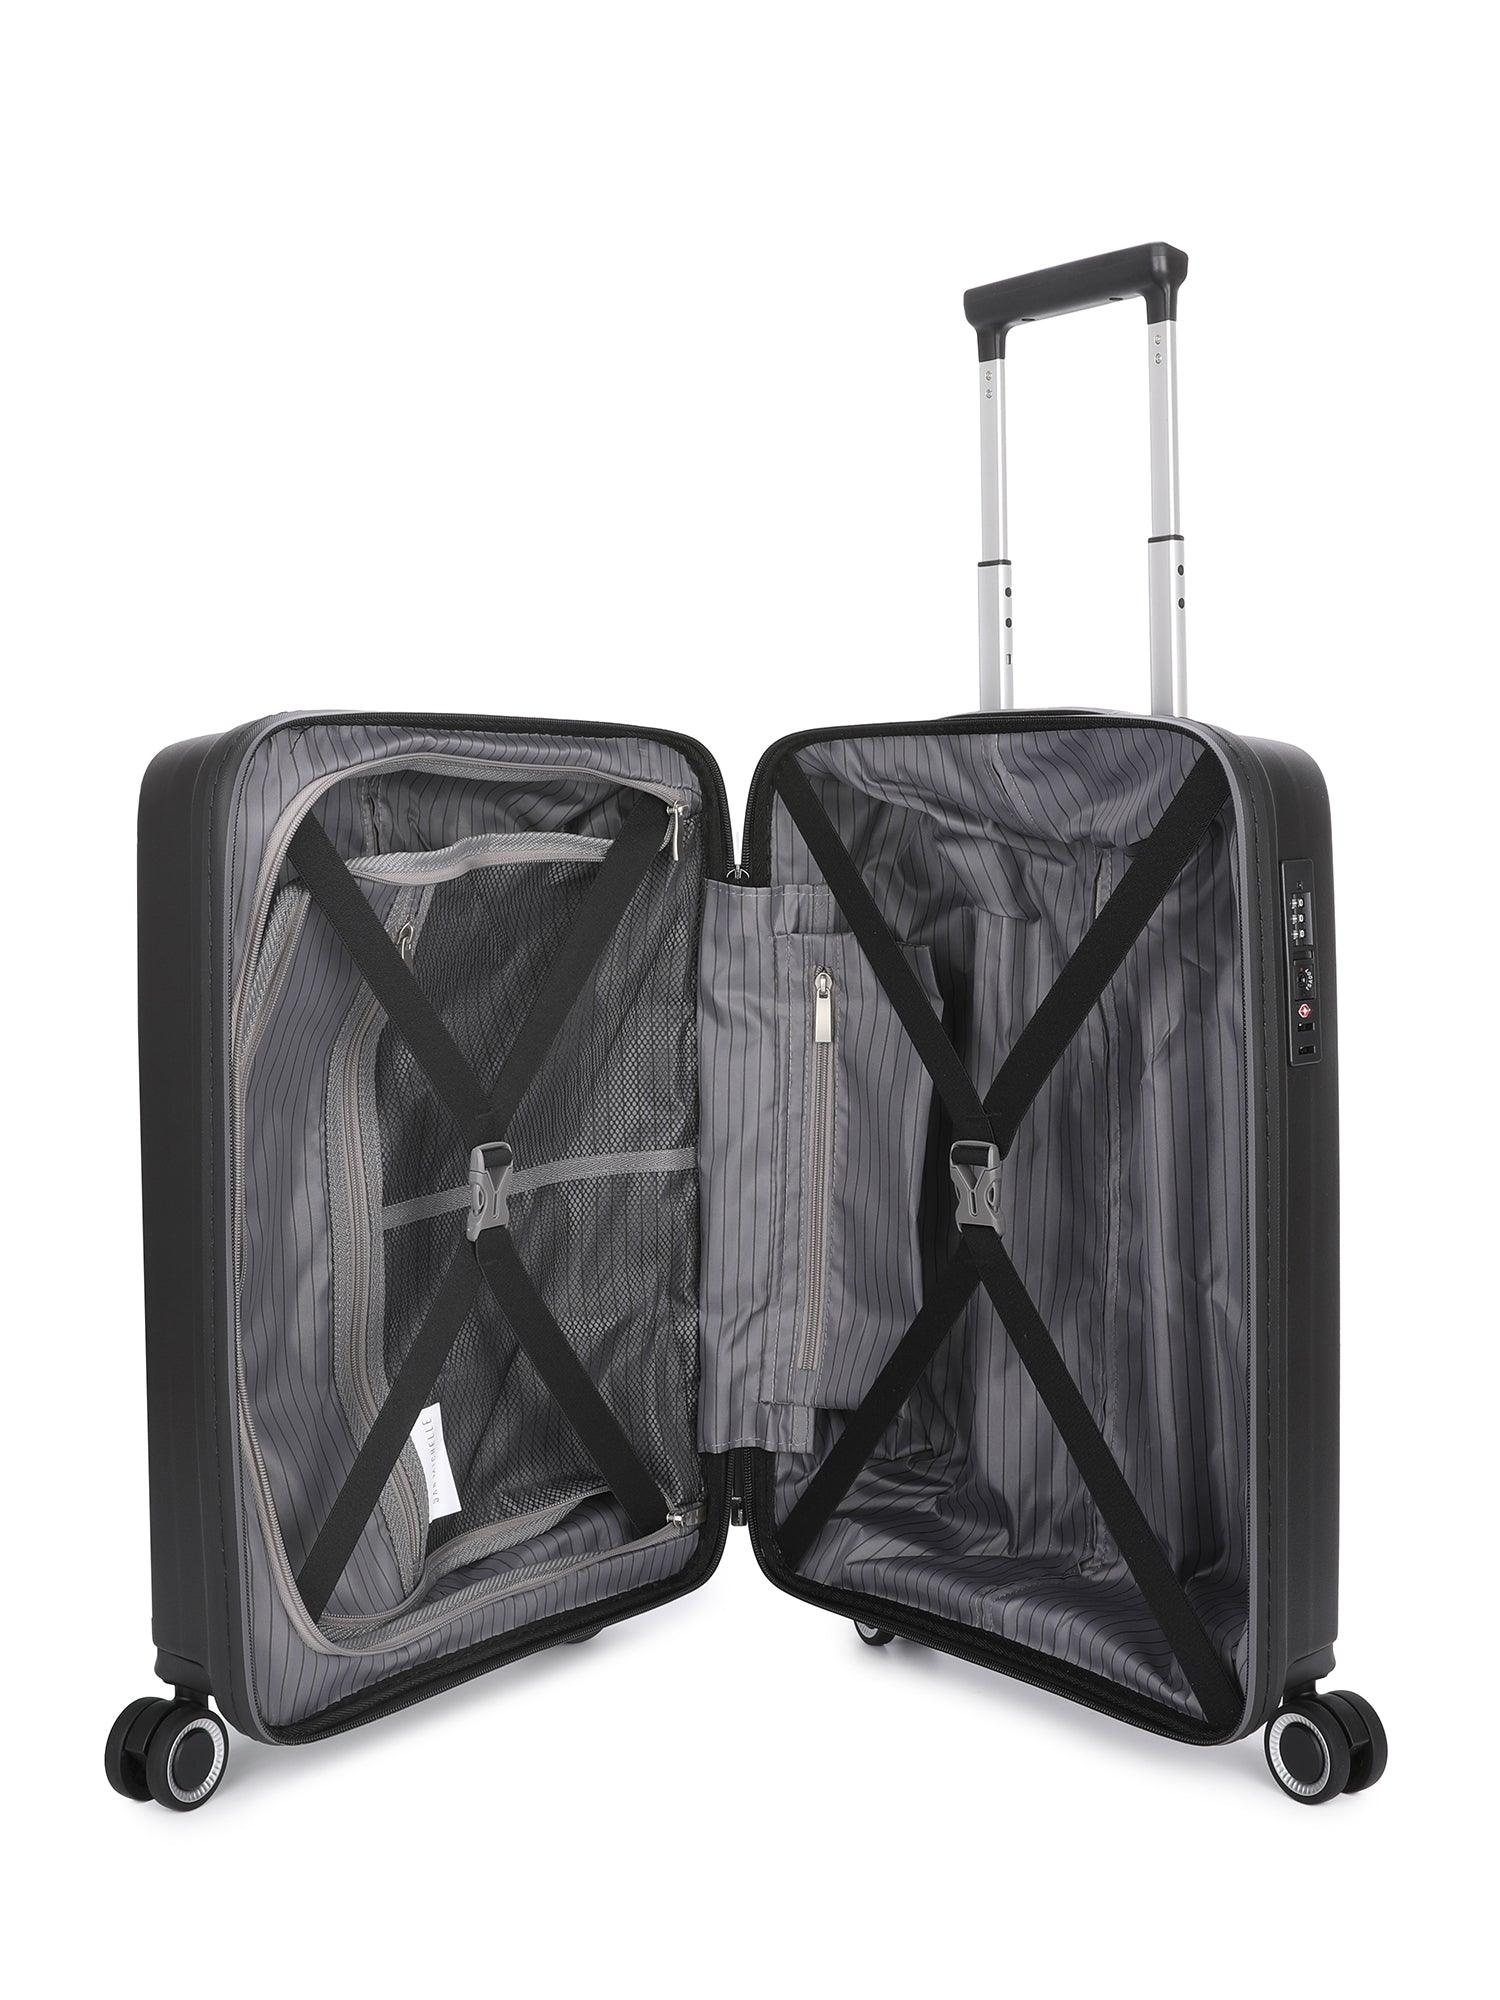 San Michelle Light Traveller 54cm Suitcase - White - San Michelle Bags suitcase nz